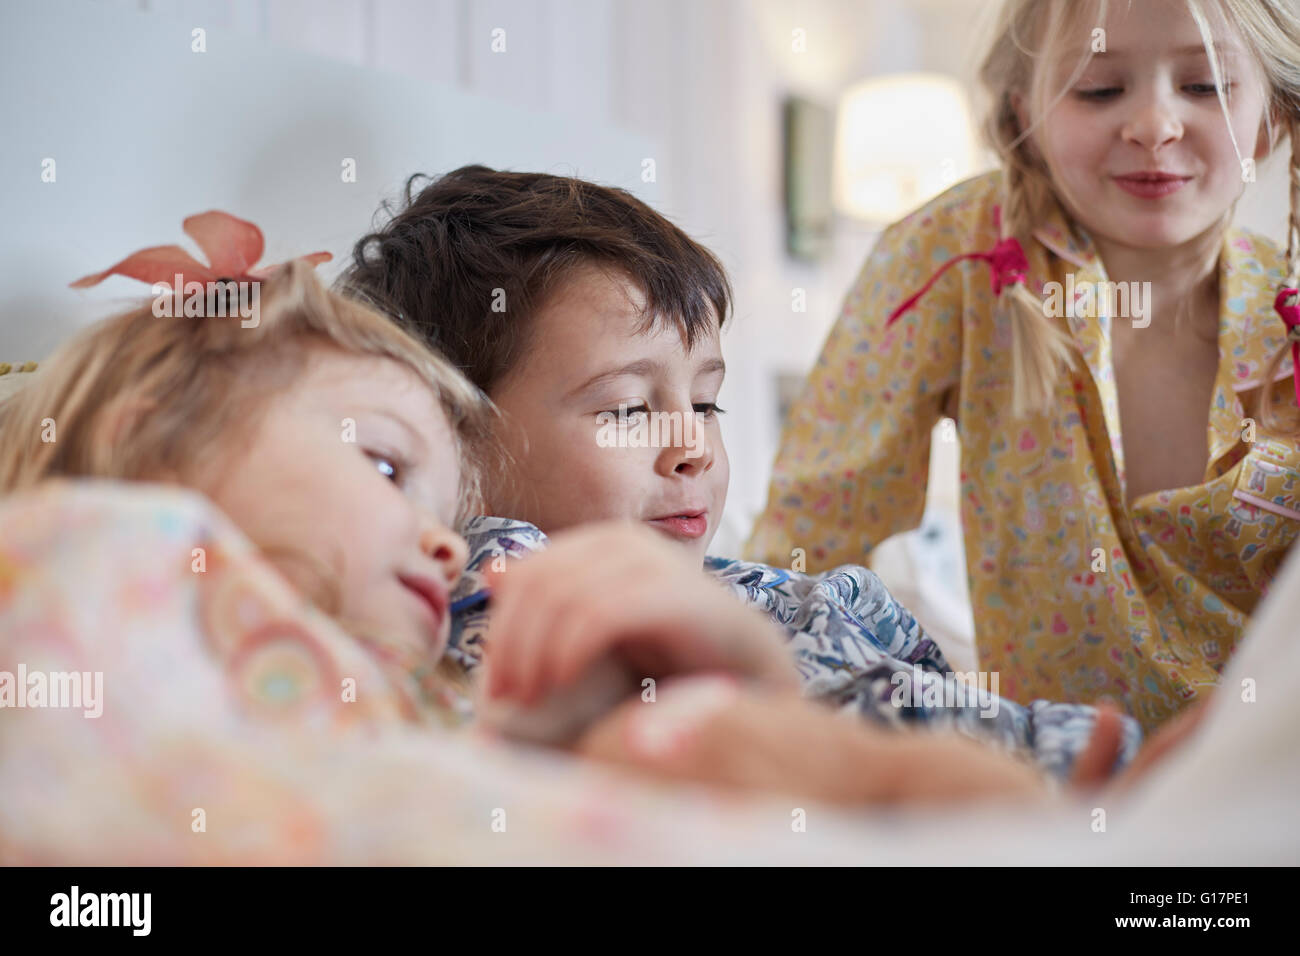 Children in pyjamas in bed Stock Photo